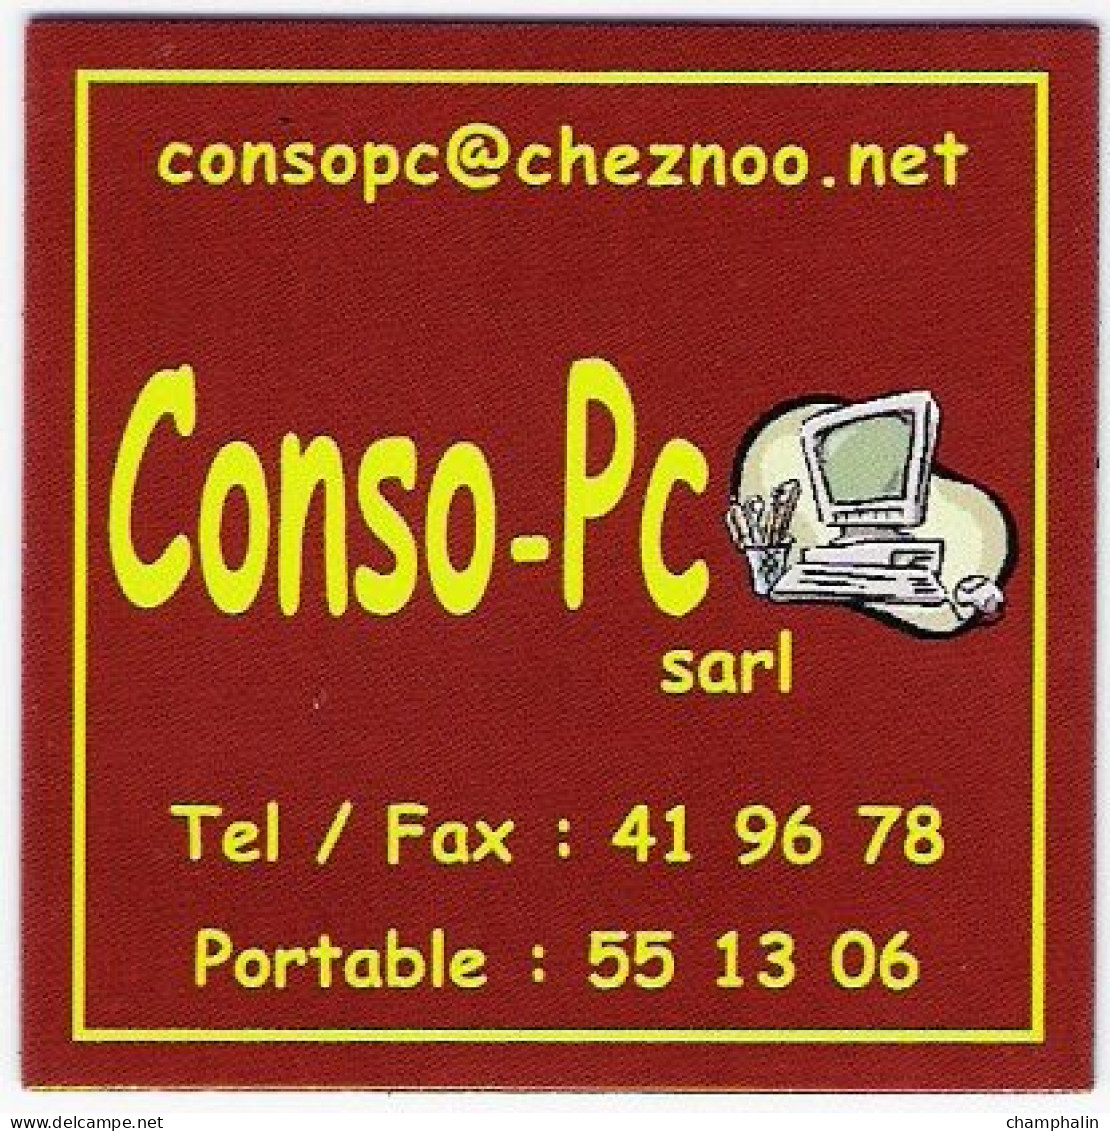 France - Magnet Publicitaire - Conso-Pc Sarl - Entreprise Informatique à Saint-Pierre-et-Miquelon (975) - Publicitaires